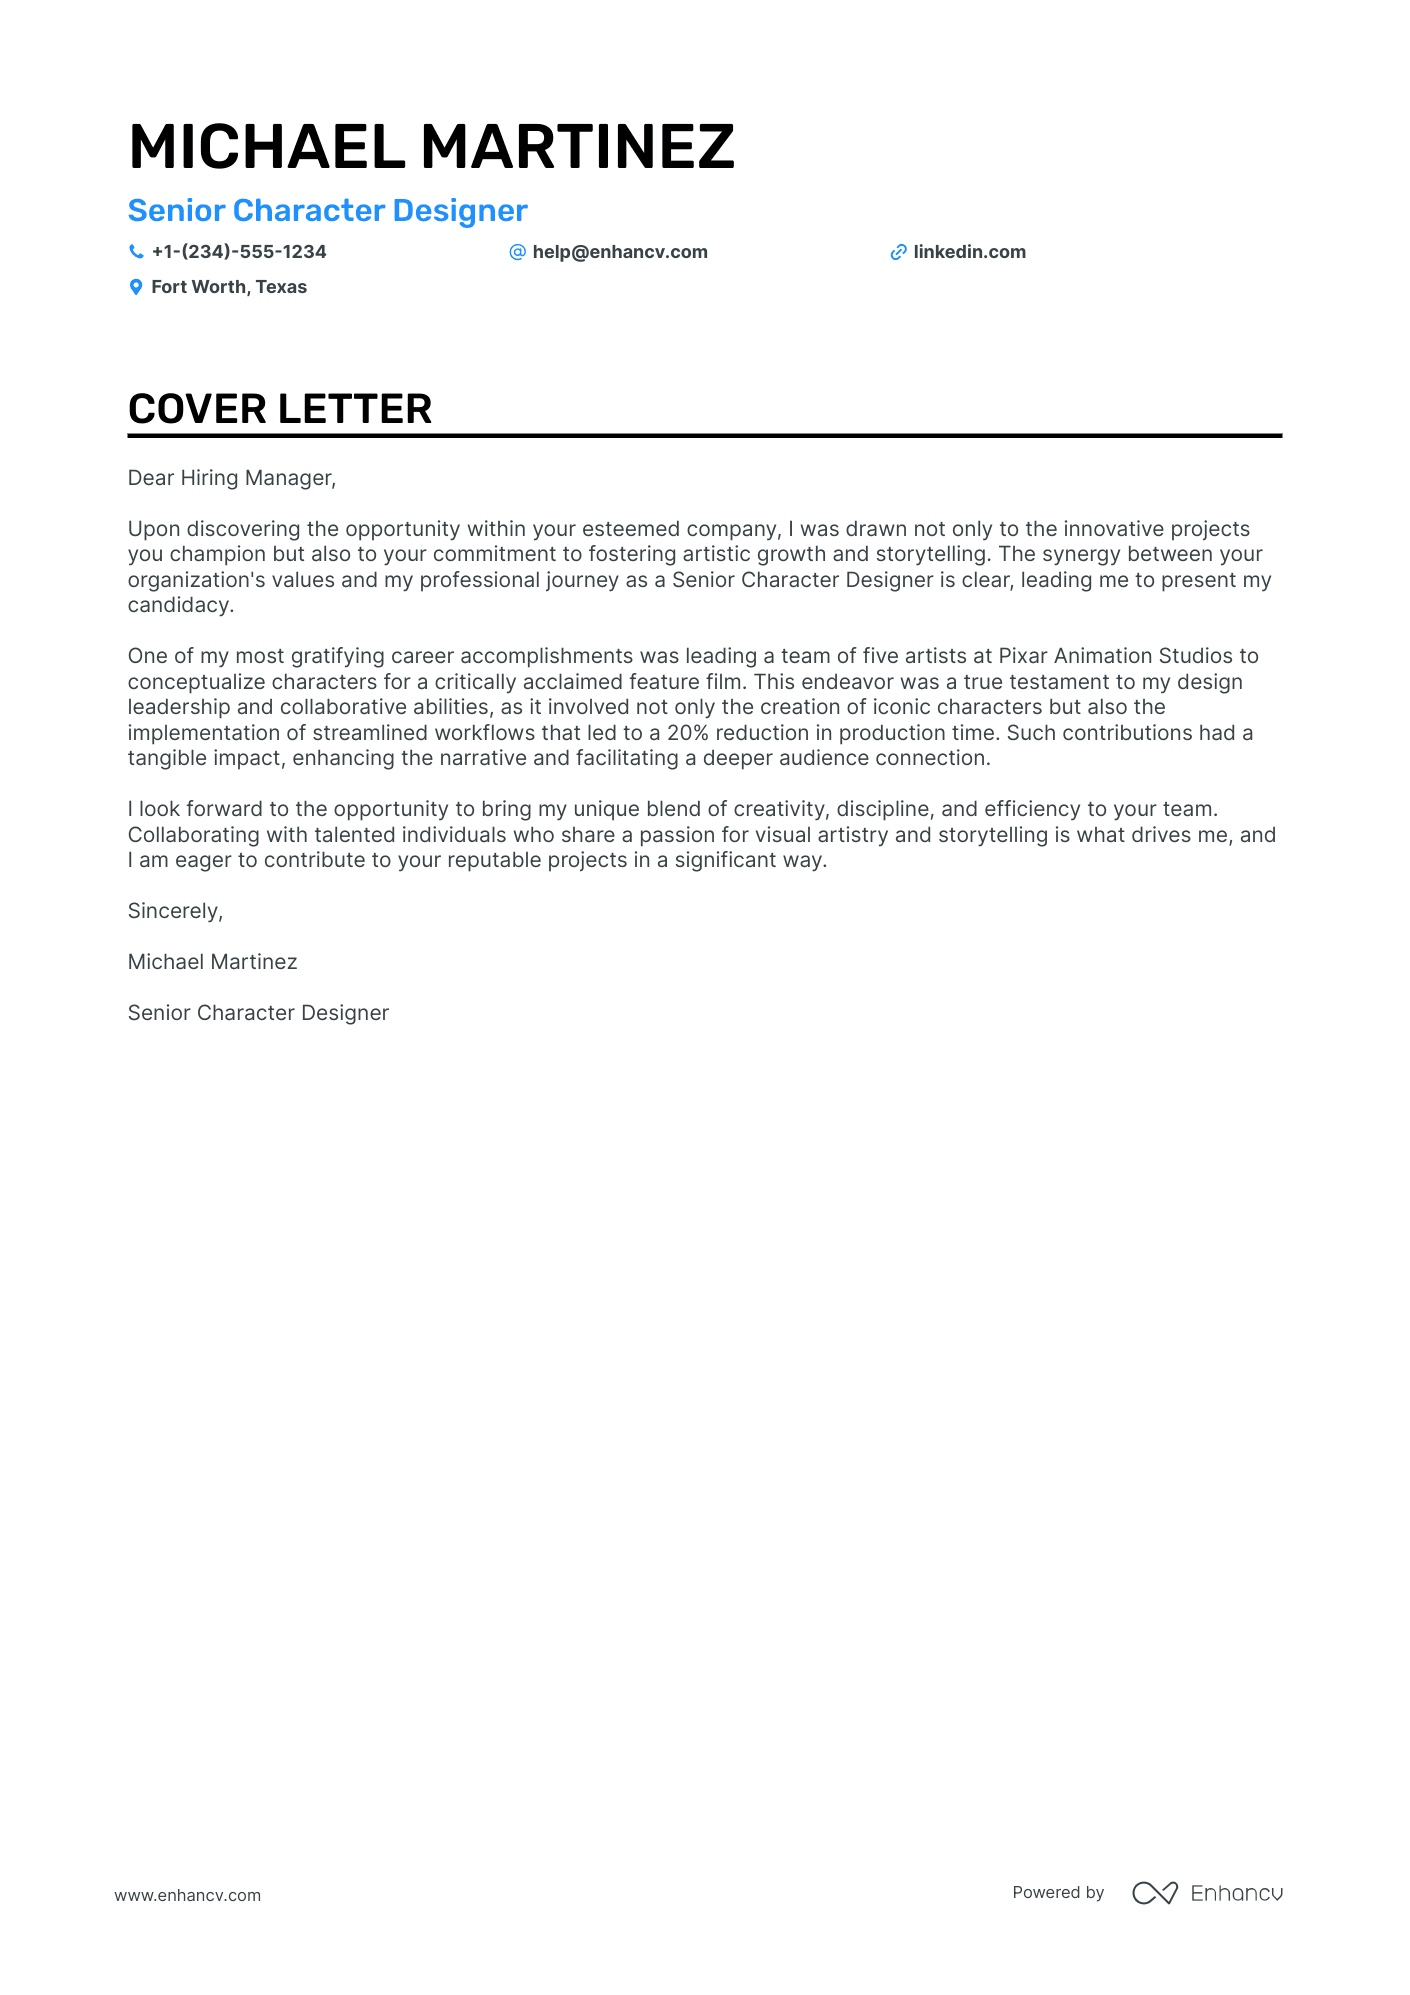 Character Designer cover letter